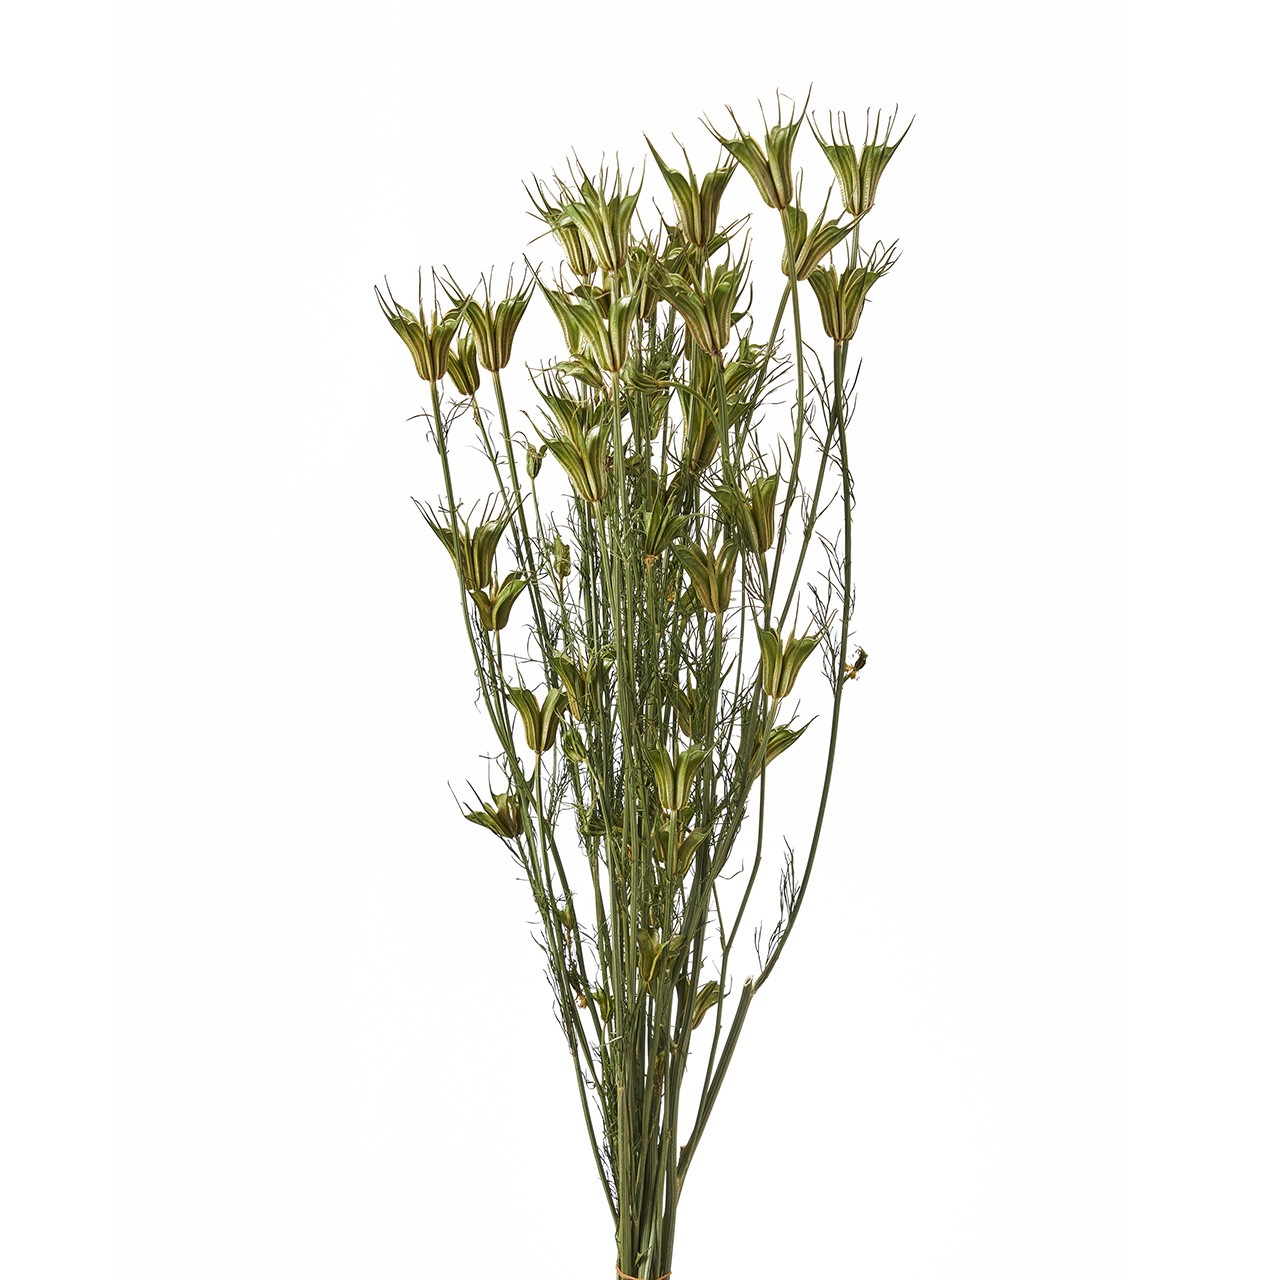 マイフラ 通販 風の花 ニゲラオリエンタリス ドライフラワー ナチュラル Dn 長さ 約40 50cm ドライフラワー ナチュラル素材 全国にmagiq 花器 花資材などをお届けします